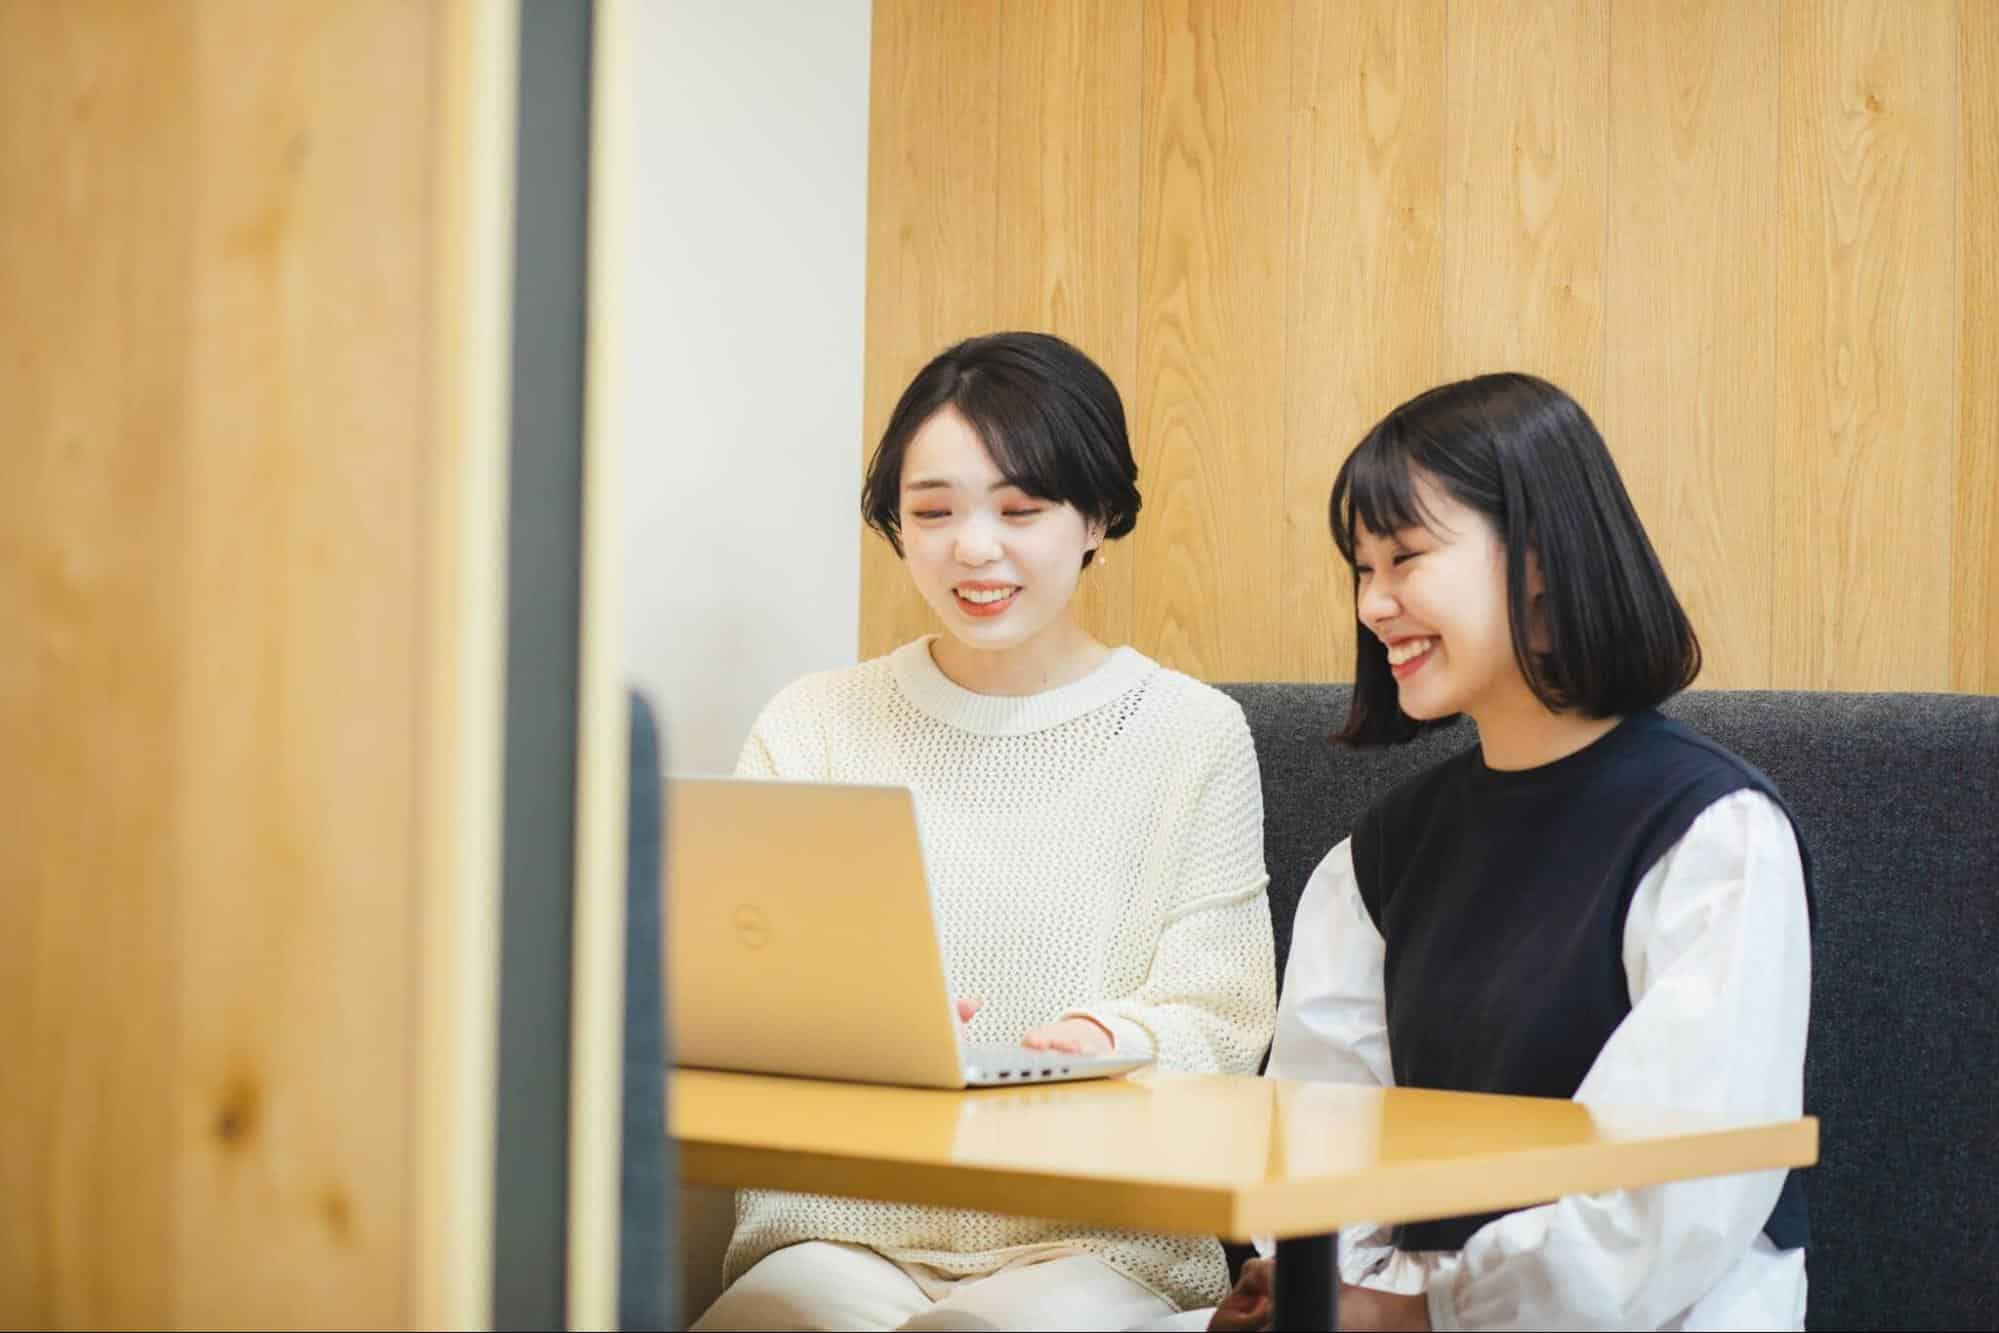 パソコンを見て笑い合う女性二人